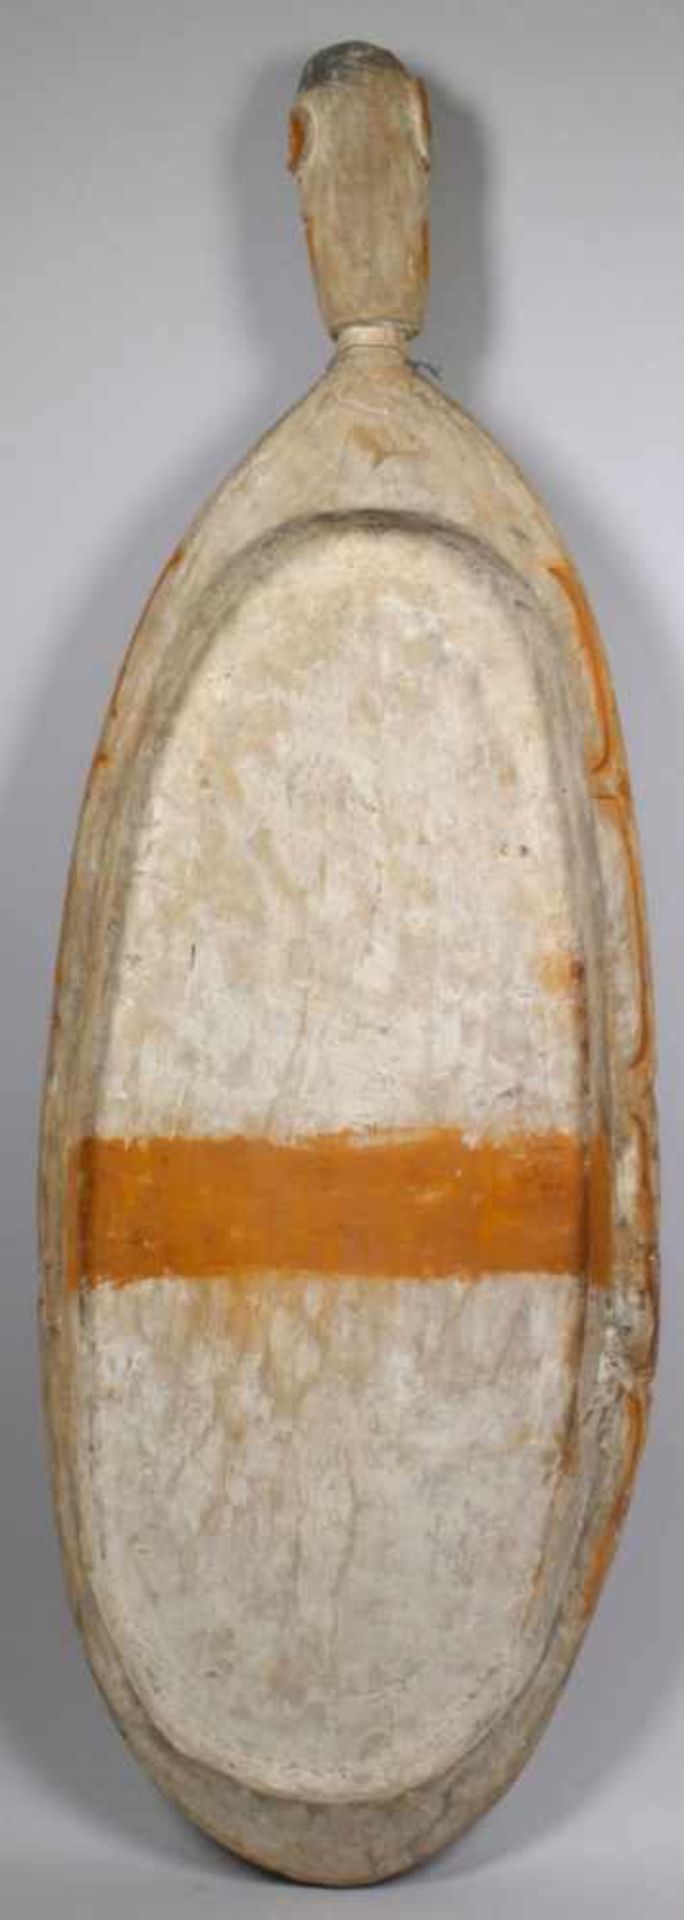 Sago-Brett, Asmat, Papua, Neu-Guinea, hochovale Form mit reliefplastischerOrnamentschnitzerei und - Bild 2 aus 2